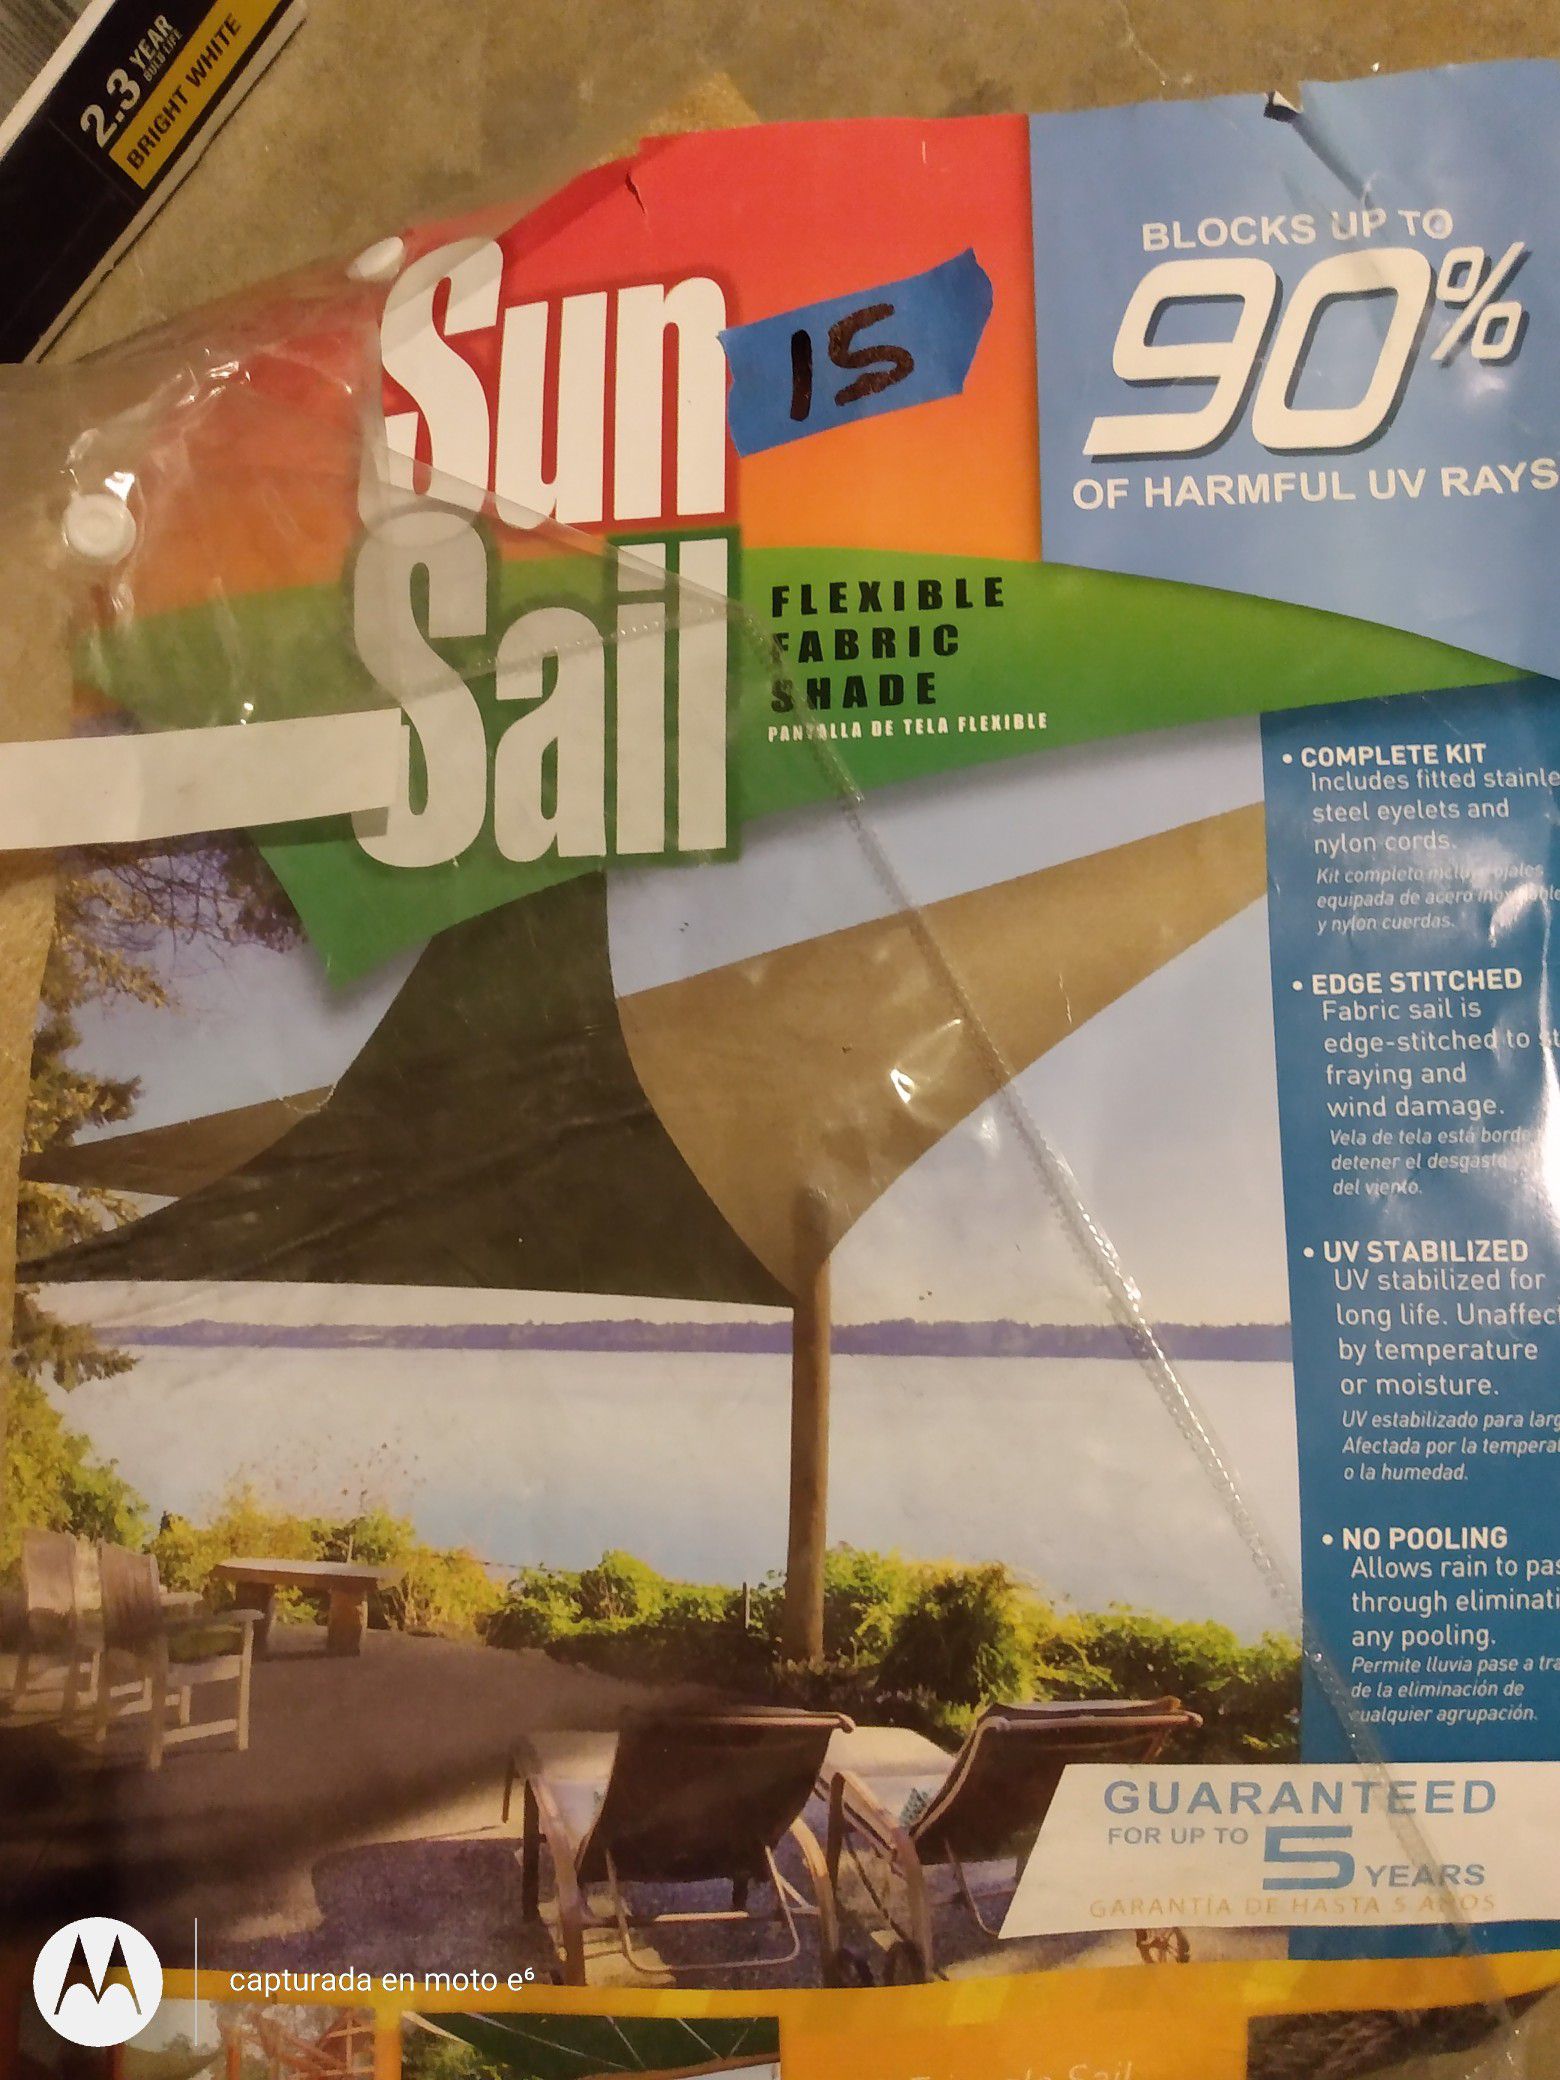 Sun sail